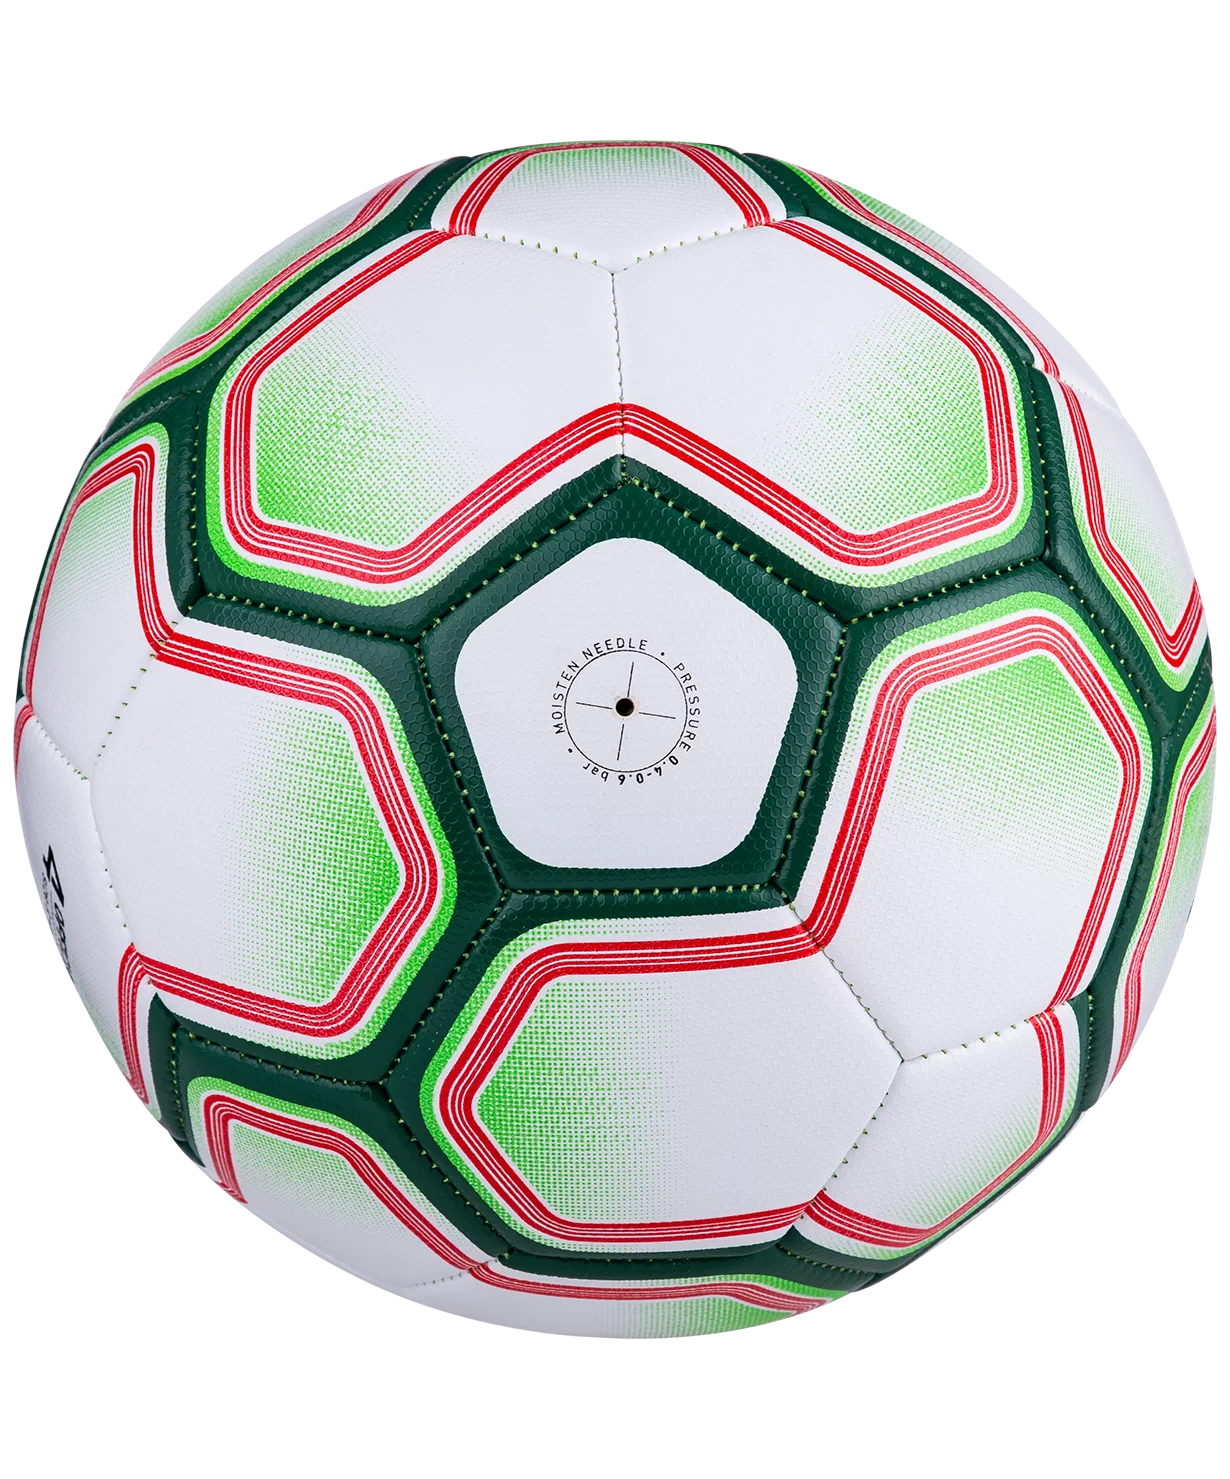 Реальное фото Мяч футбольный Jögel Nano №4 (BC20) УТ-00016946 от магазина СпортСЕ